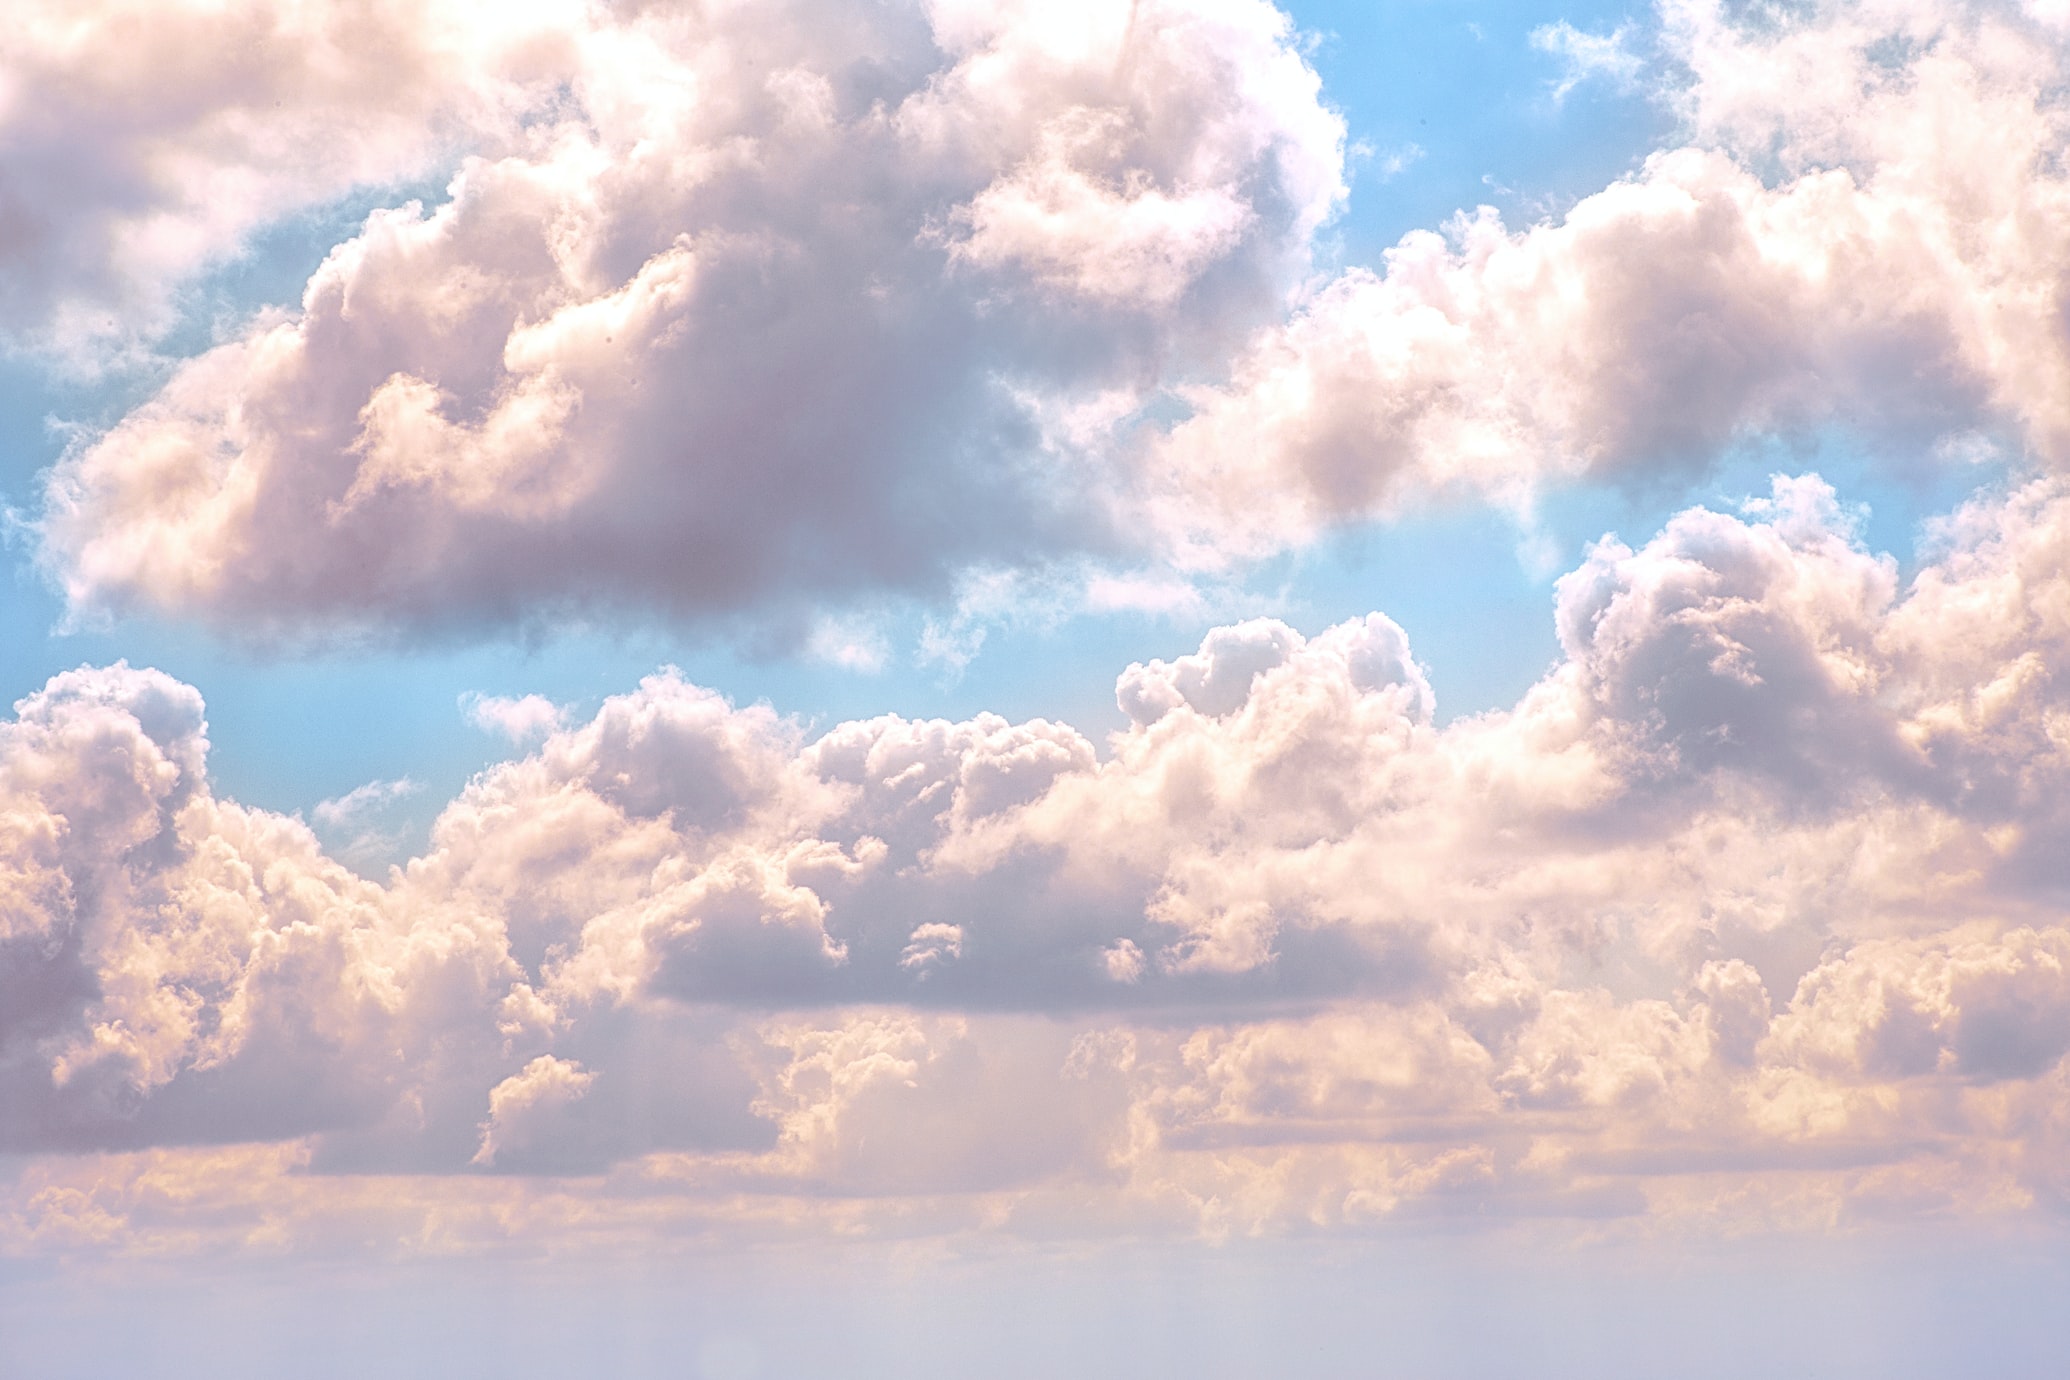 Bulut çeşitleri ve anlamları nelerdir? Bulut şekilleri ne anlama gelmektedir?